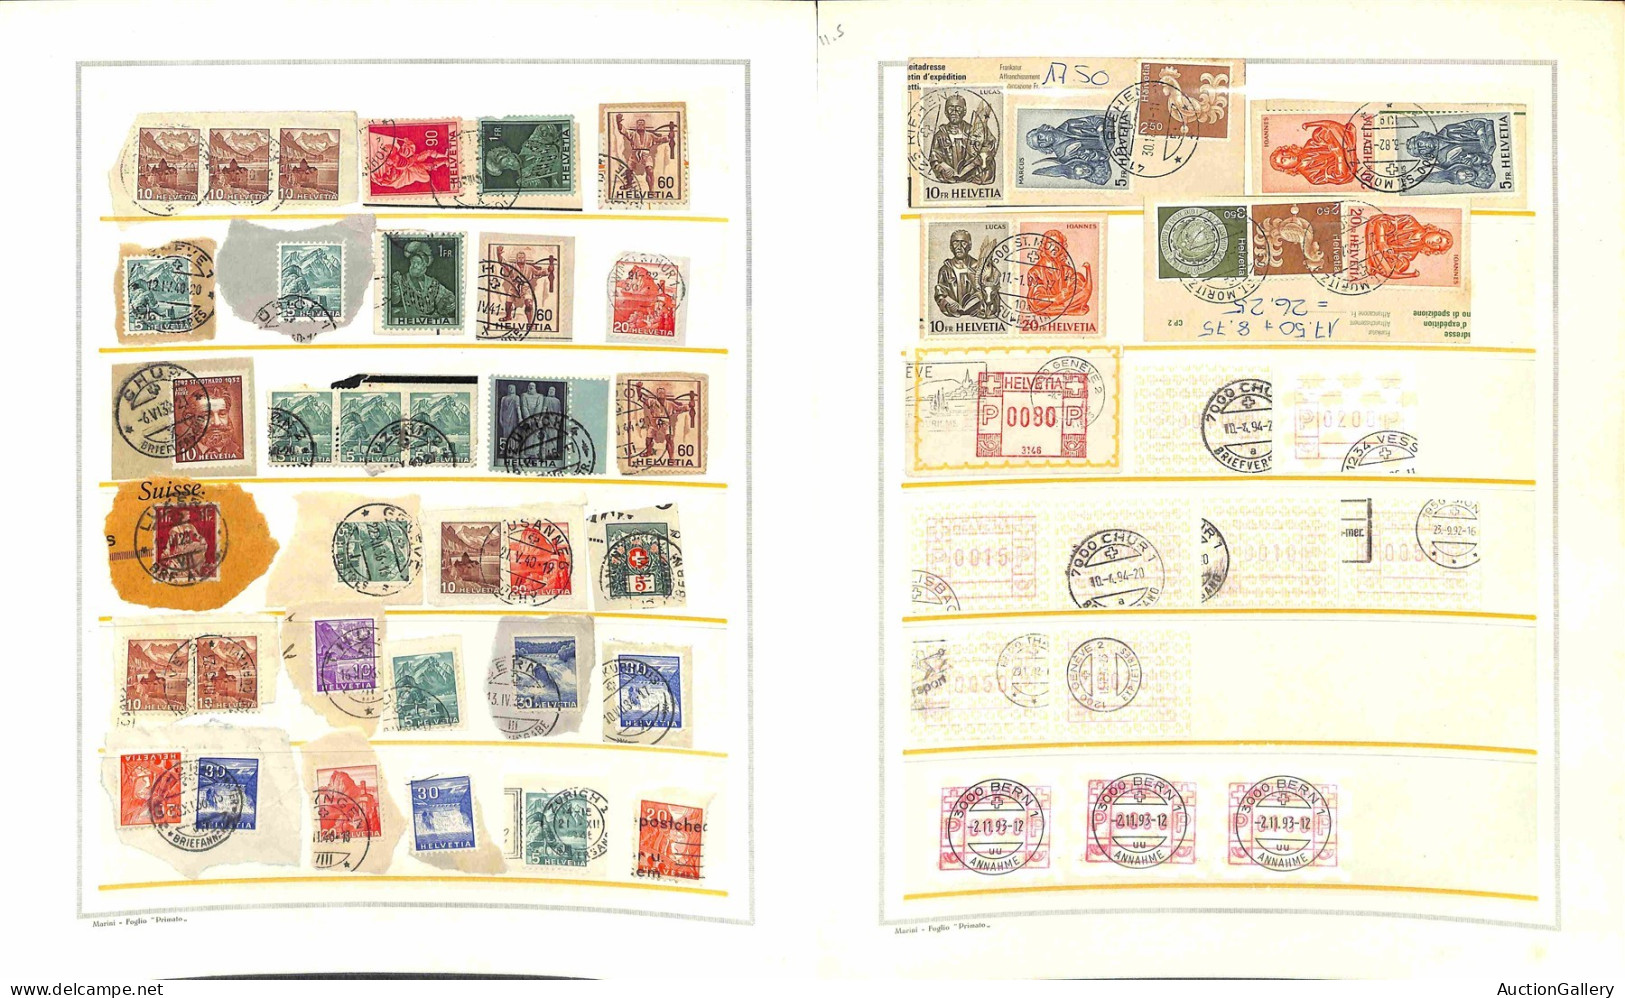 Lotti e Collezioni - Europa e Oltremare - SVIZZERA - 1900/1960 - Collezione di centinaia di valori usati e frammenti del